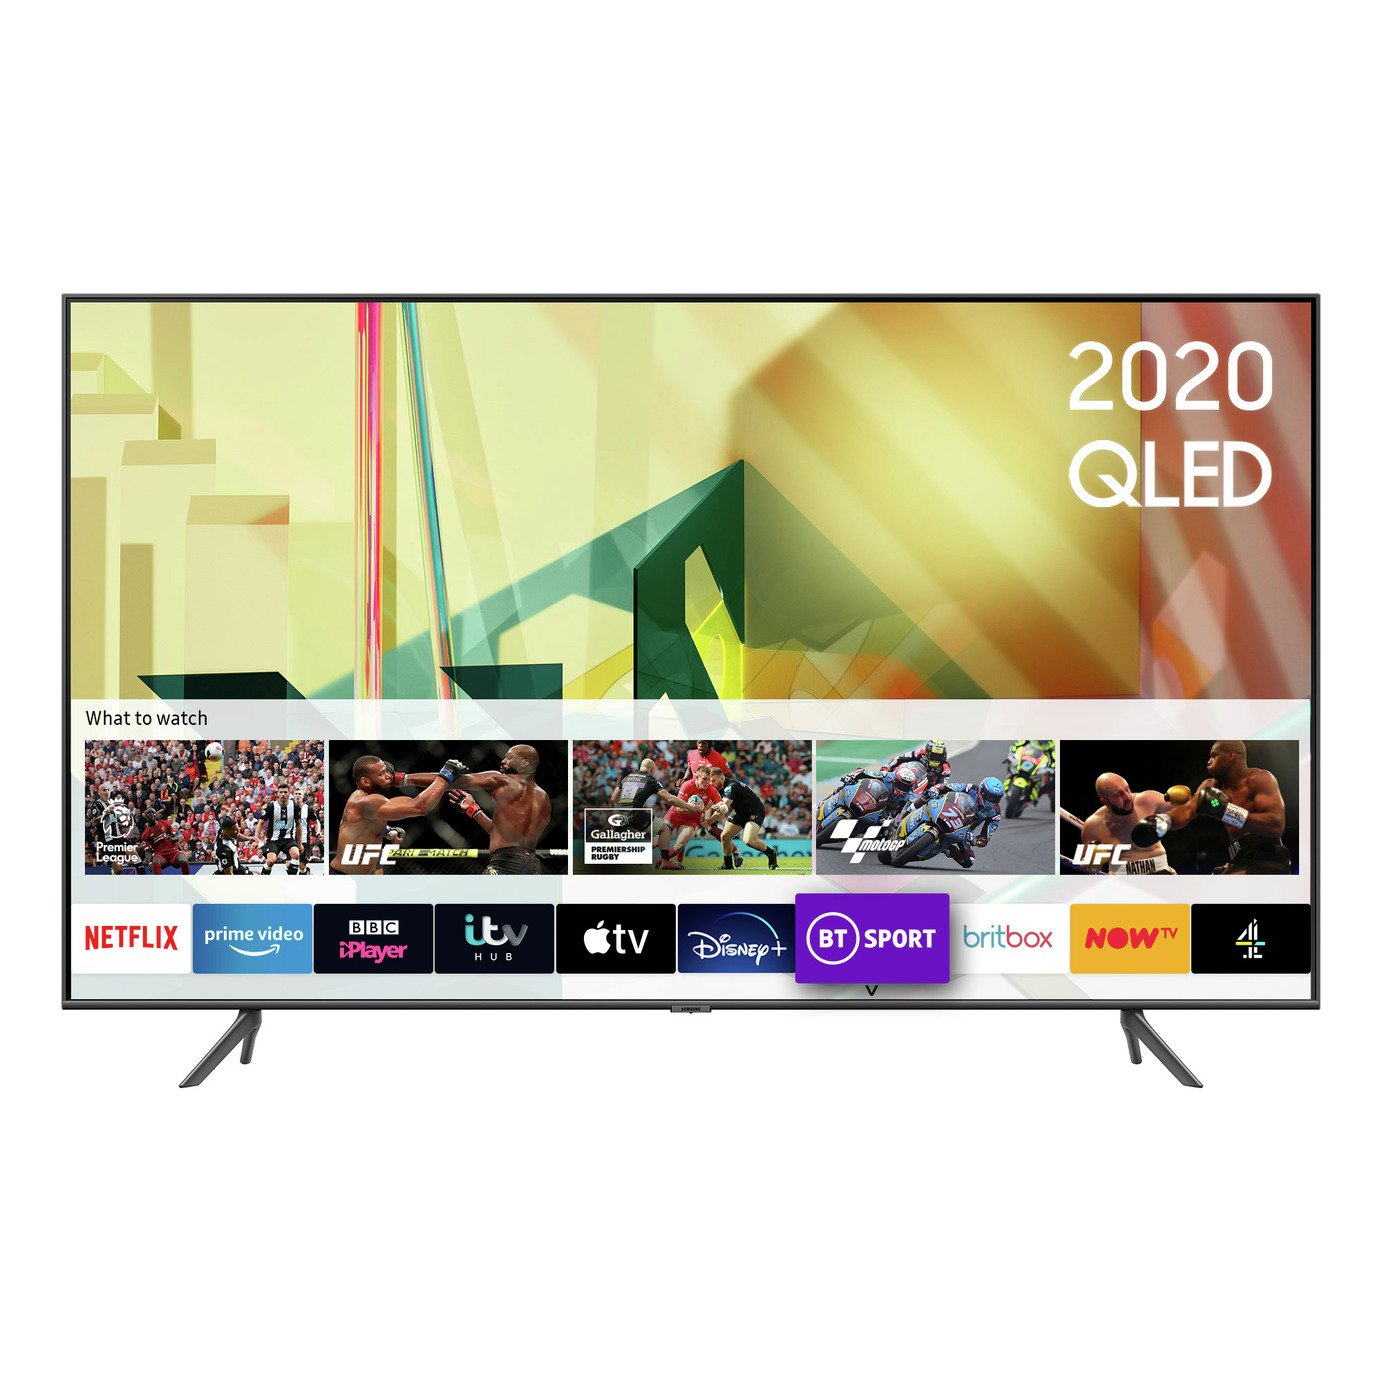 Samsung 85 Inch QE85Q70TATXXU Smart 4K Ultra HD QLED TV Review